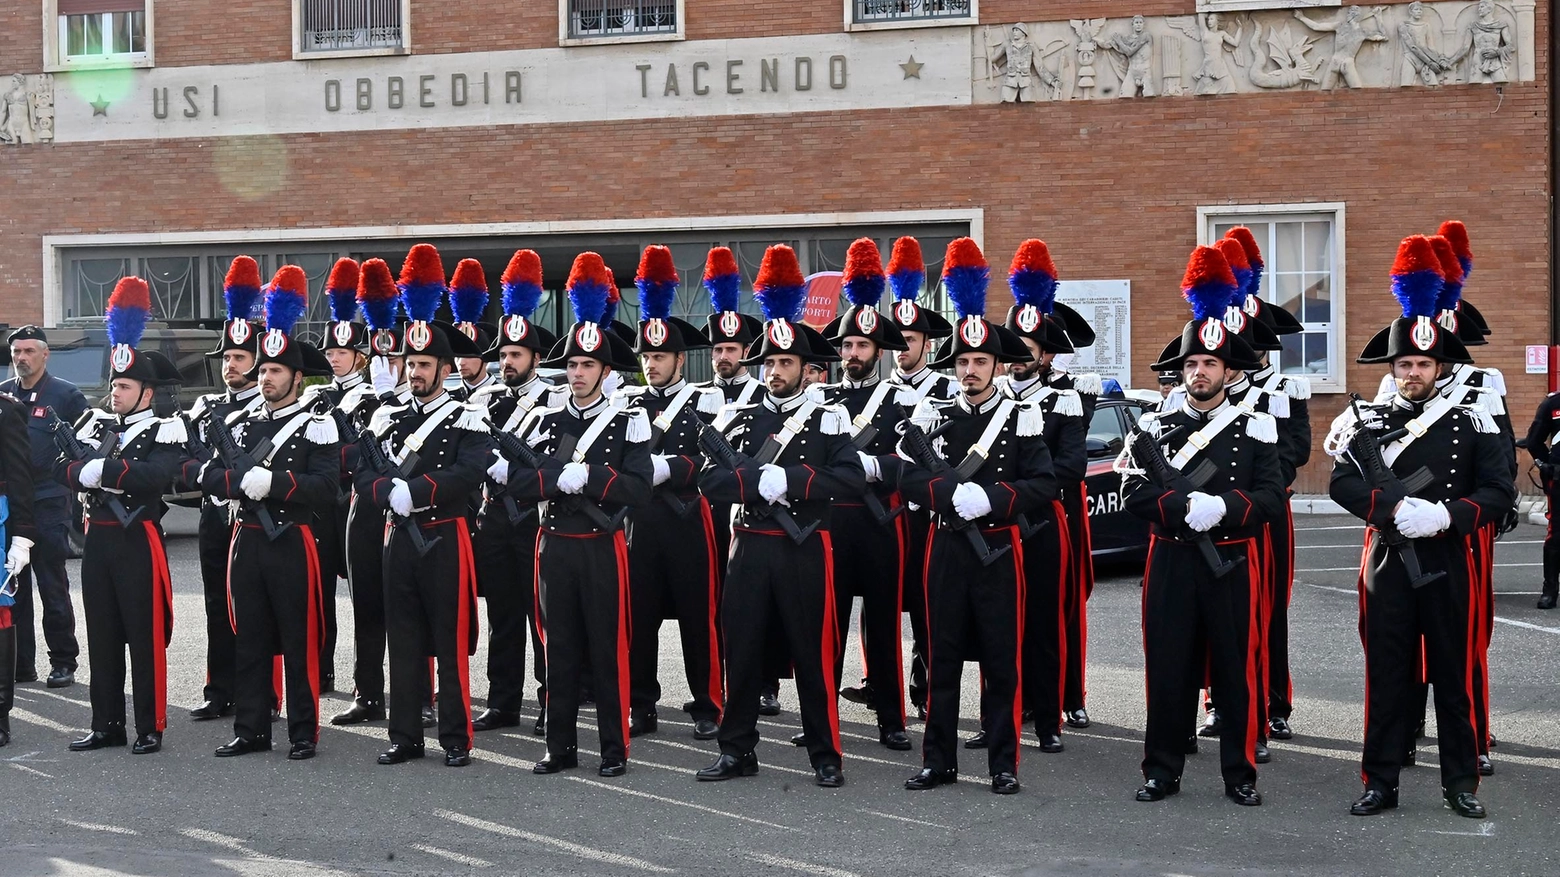 La grande festa dei carabinieri: valore e impegno per la comunità